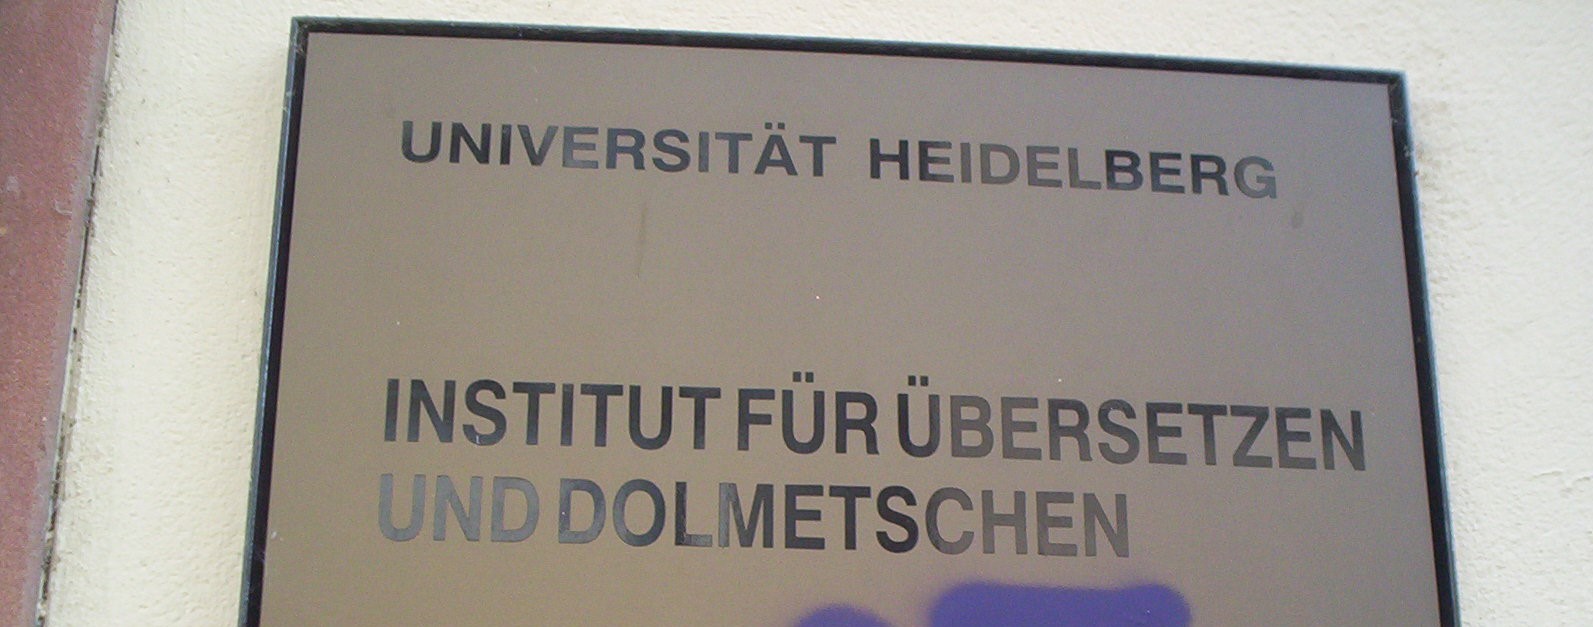 Das Institut für Übersetzen und Dolmetschen der Universität Heidelberg